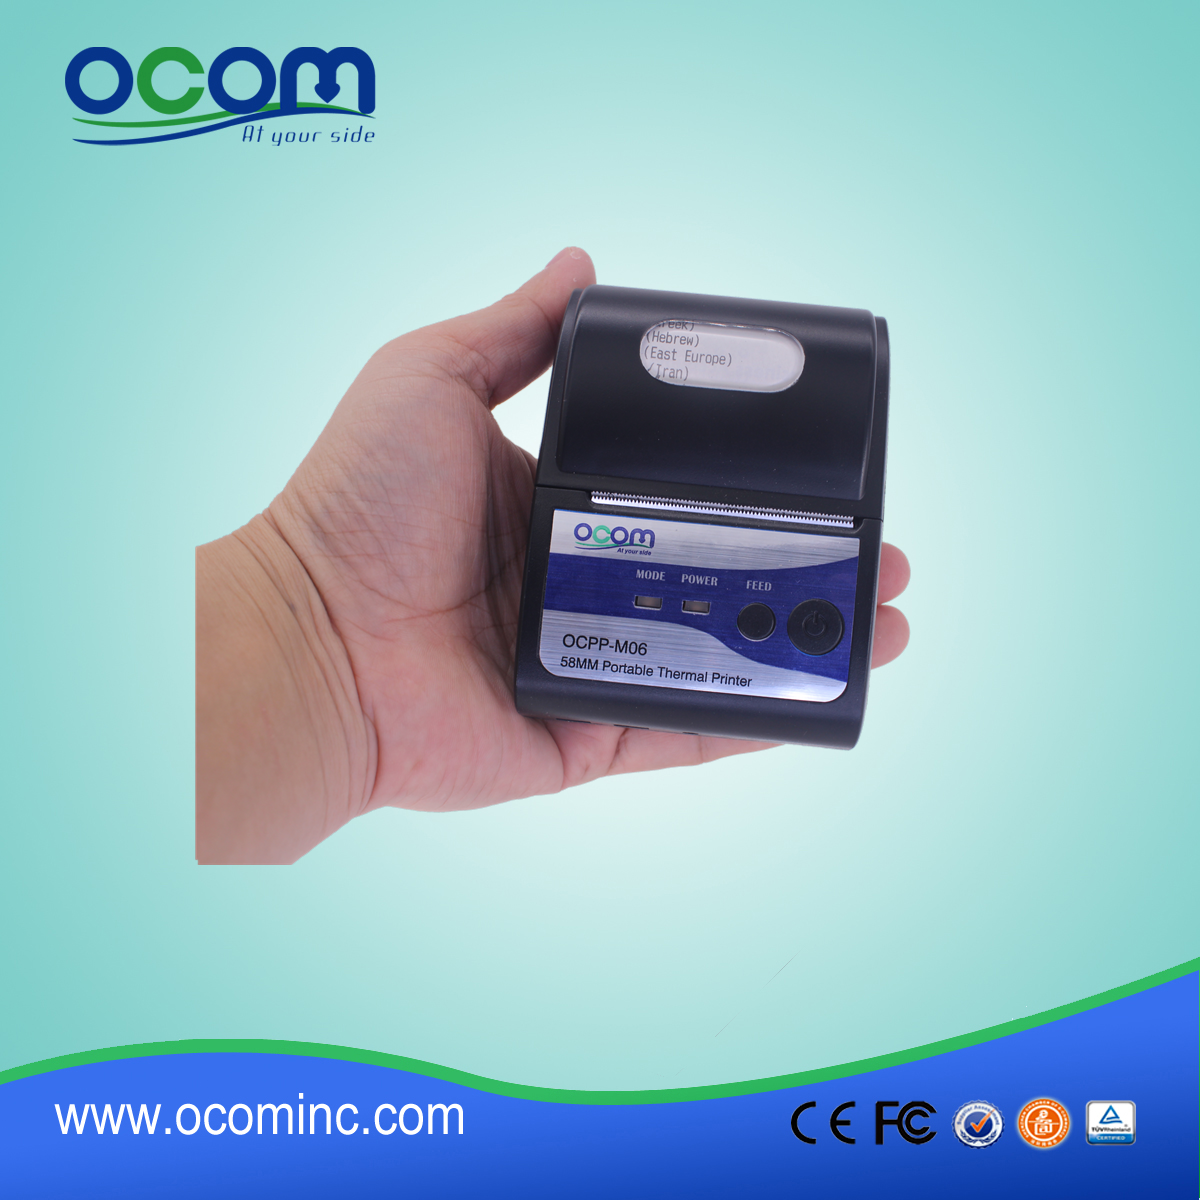 (OCPP-M06) OCOM ساخن 58mm والبيع استلام الطابعة الحرارية